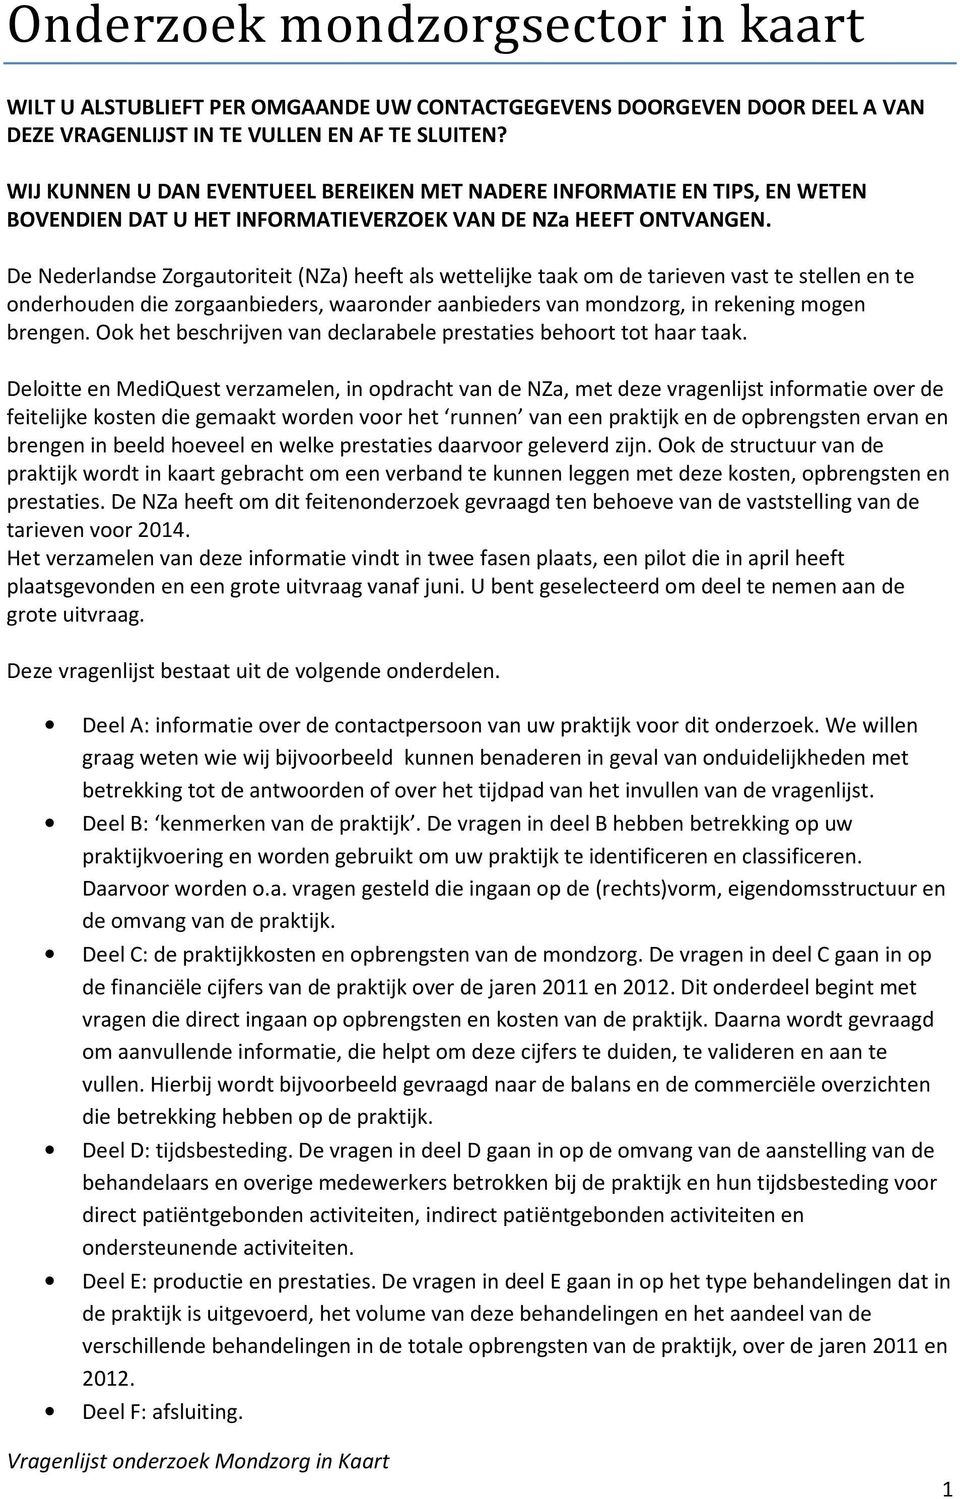 De Nederlandse Zorgautoriteit (NZa) heeft als wettelijke taak om de tarieven vast te stellen en te onderhouden die zorgaanbieders, waaronder aanbieders van mondzorg, in rekening mogen brengen.